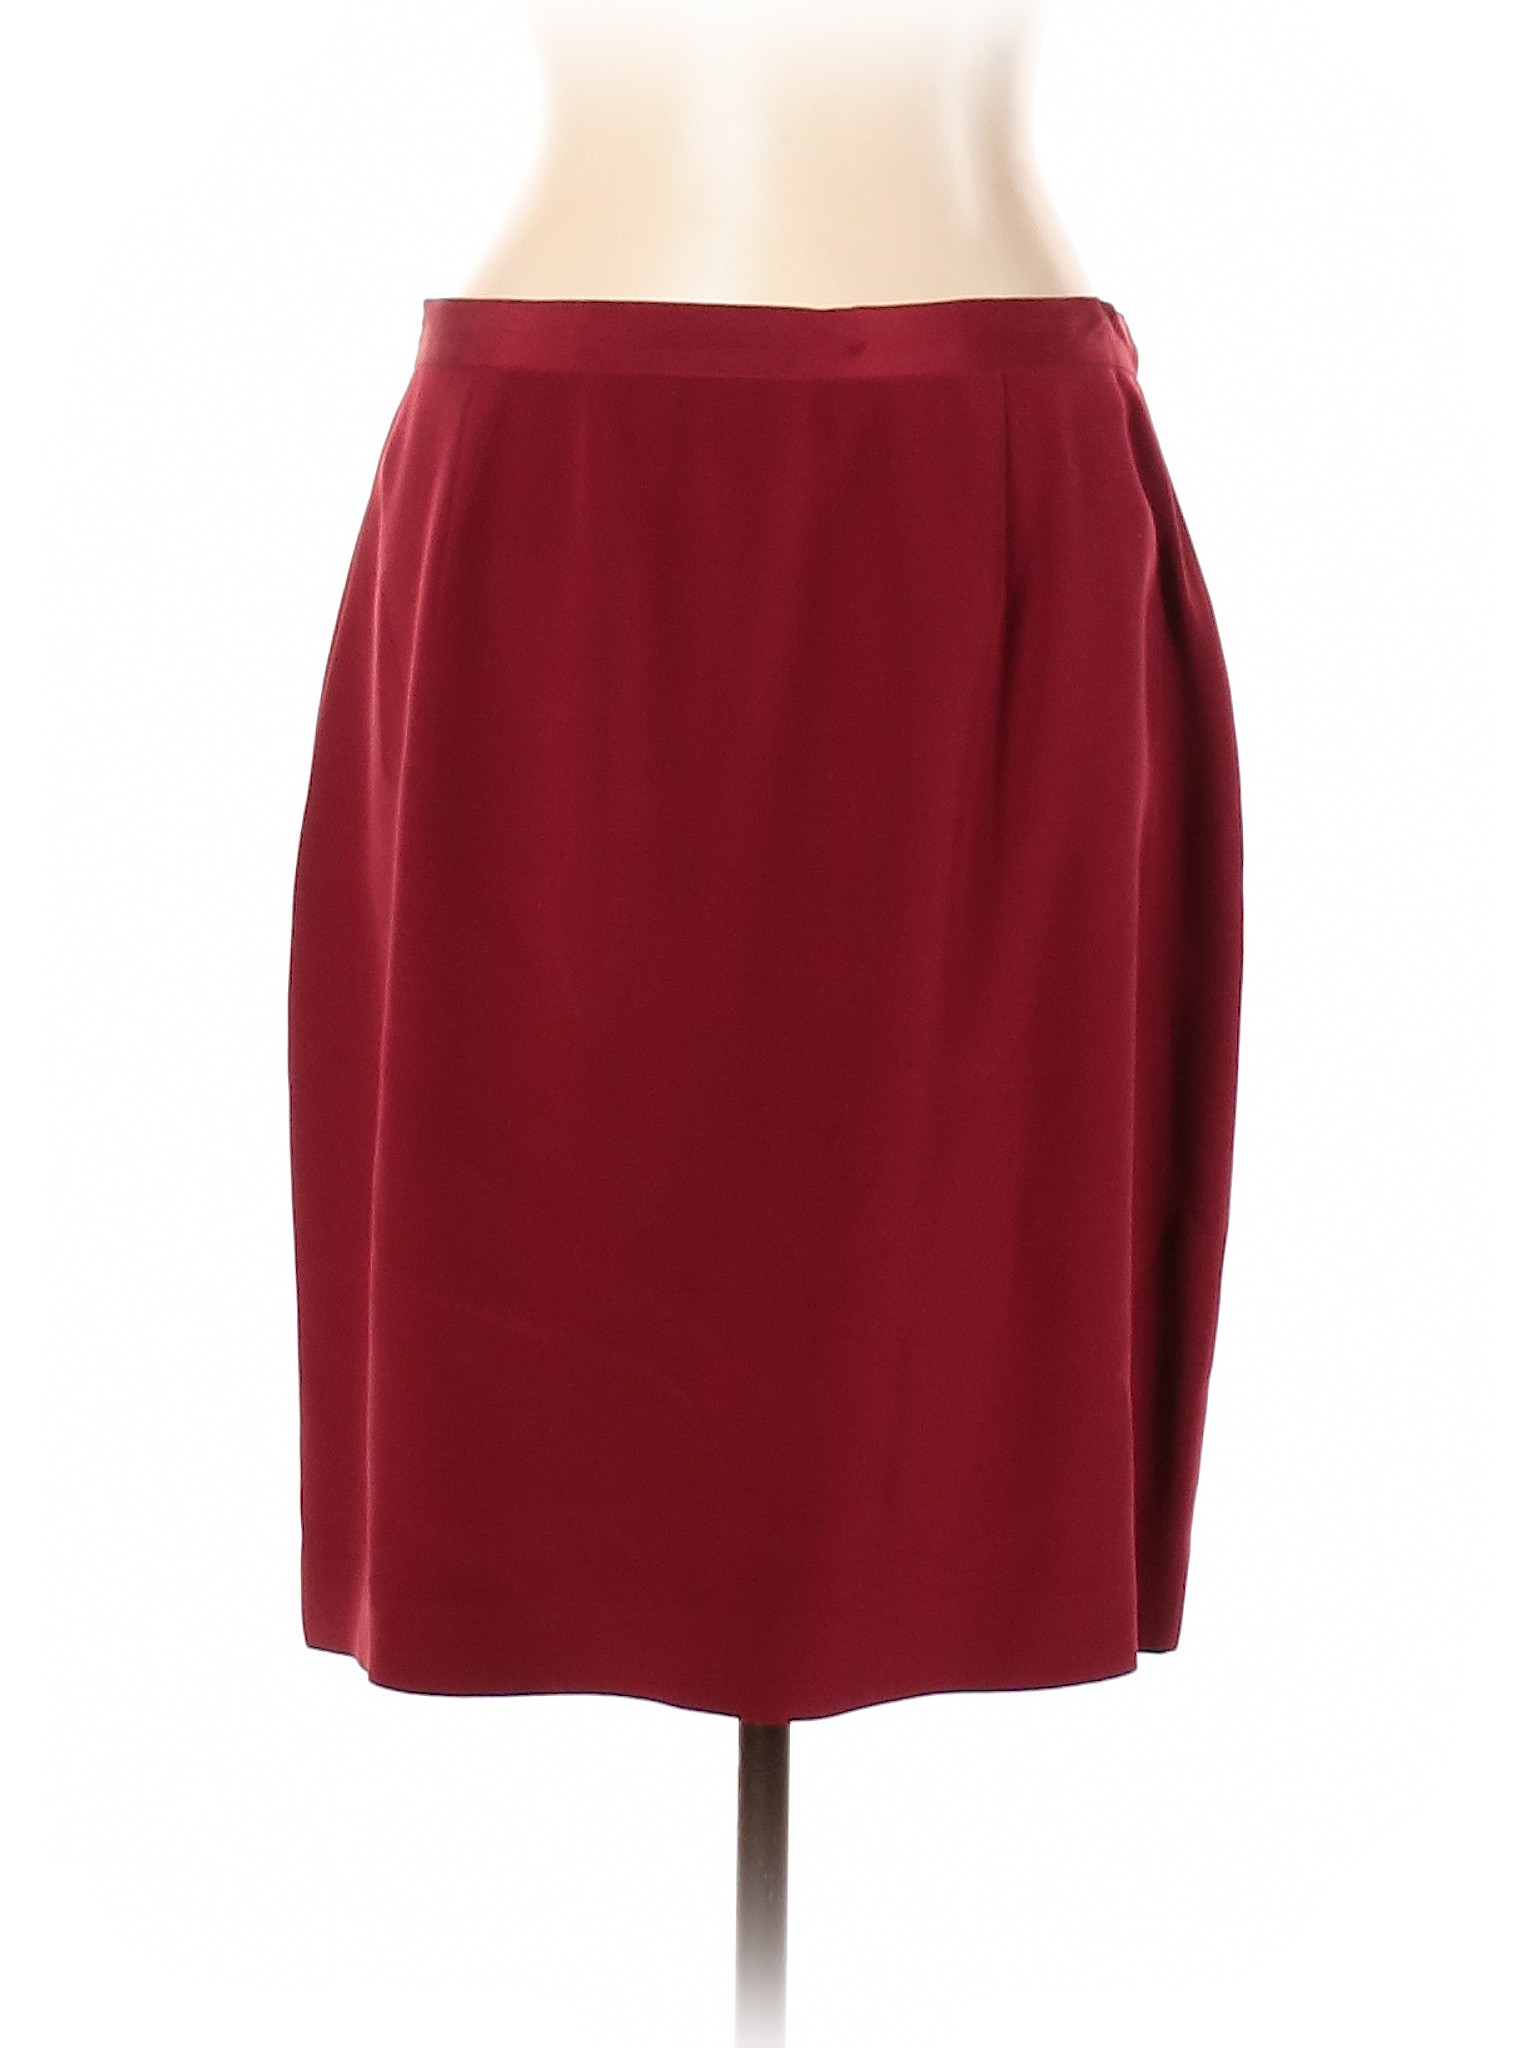 Kasper Women Red Silk Skirt 16 | eBay